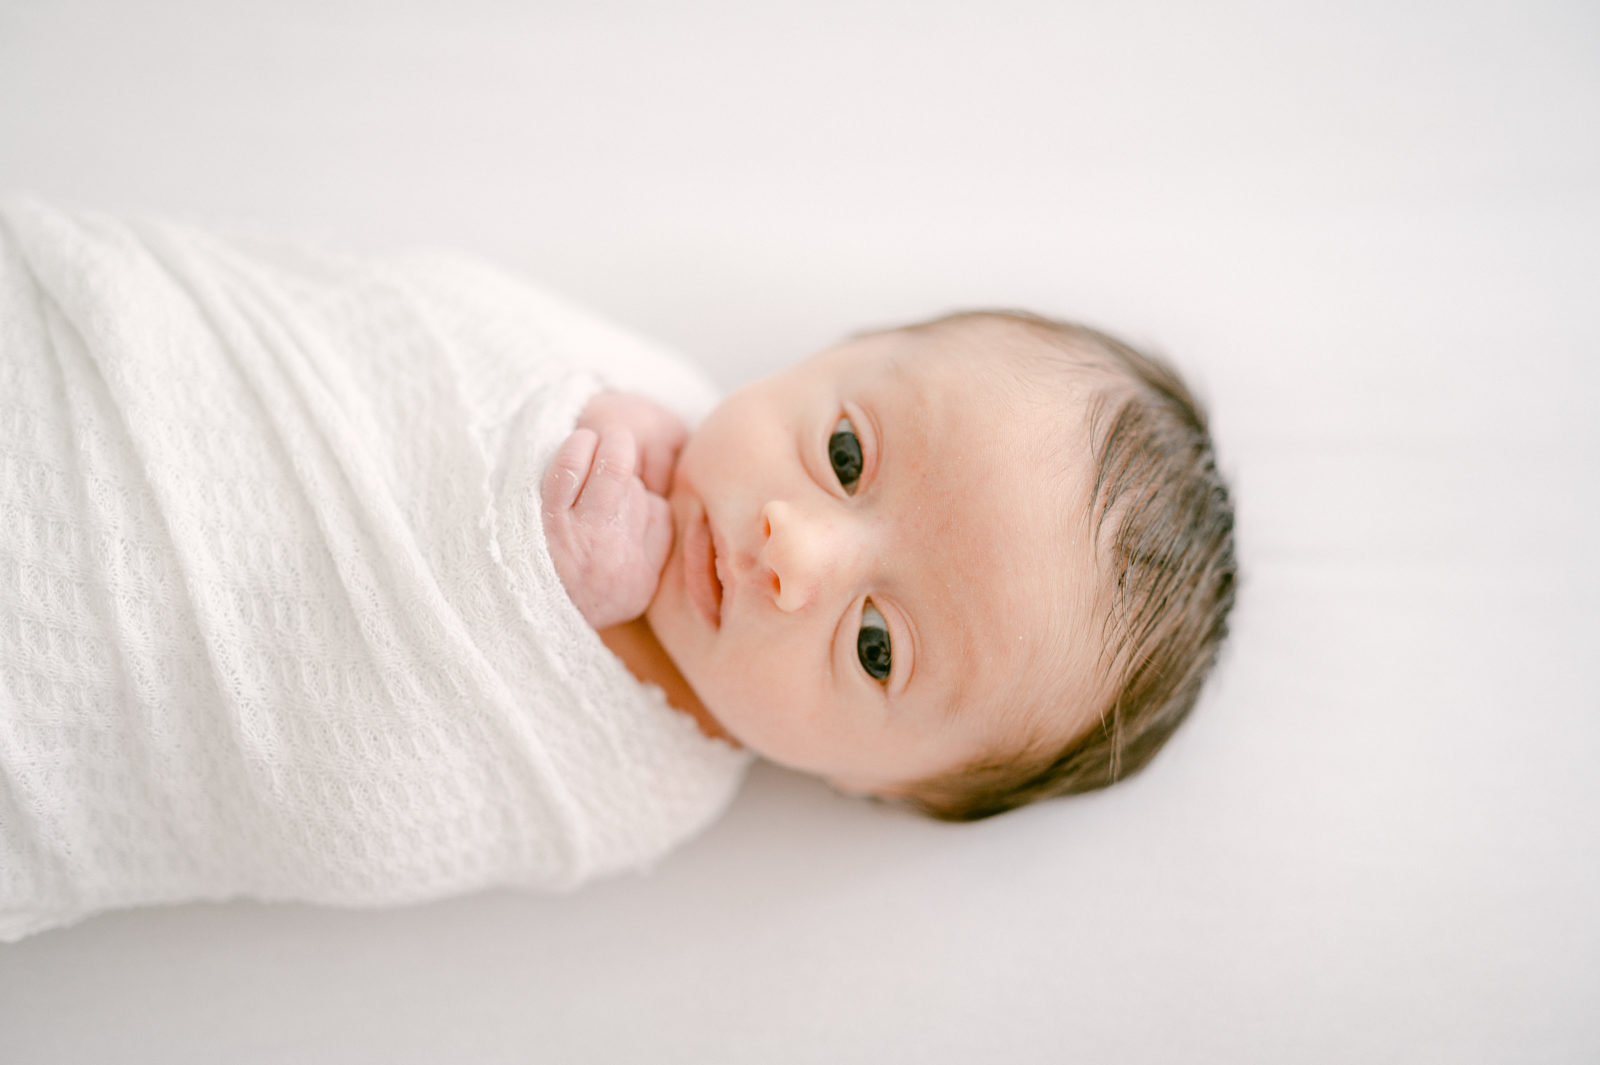 Newborn baby portrait